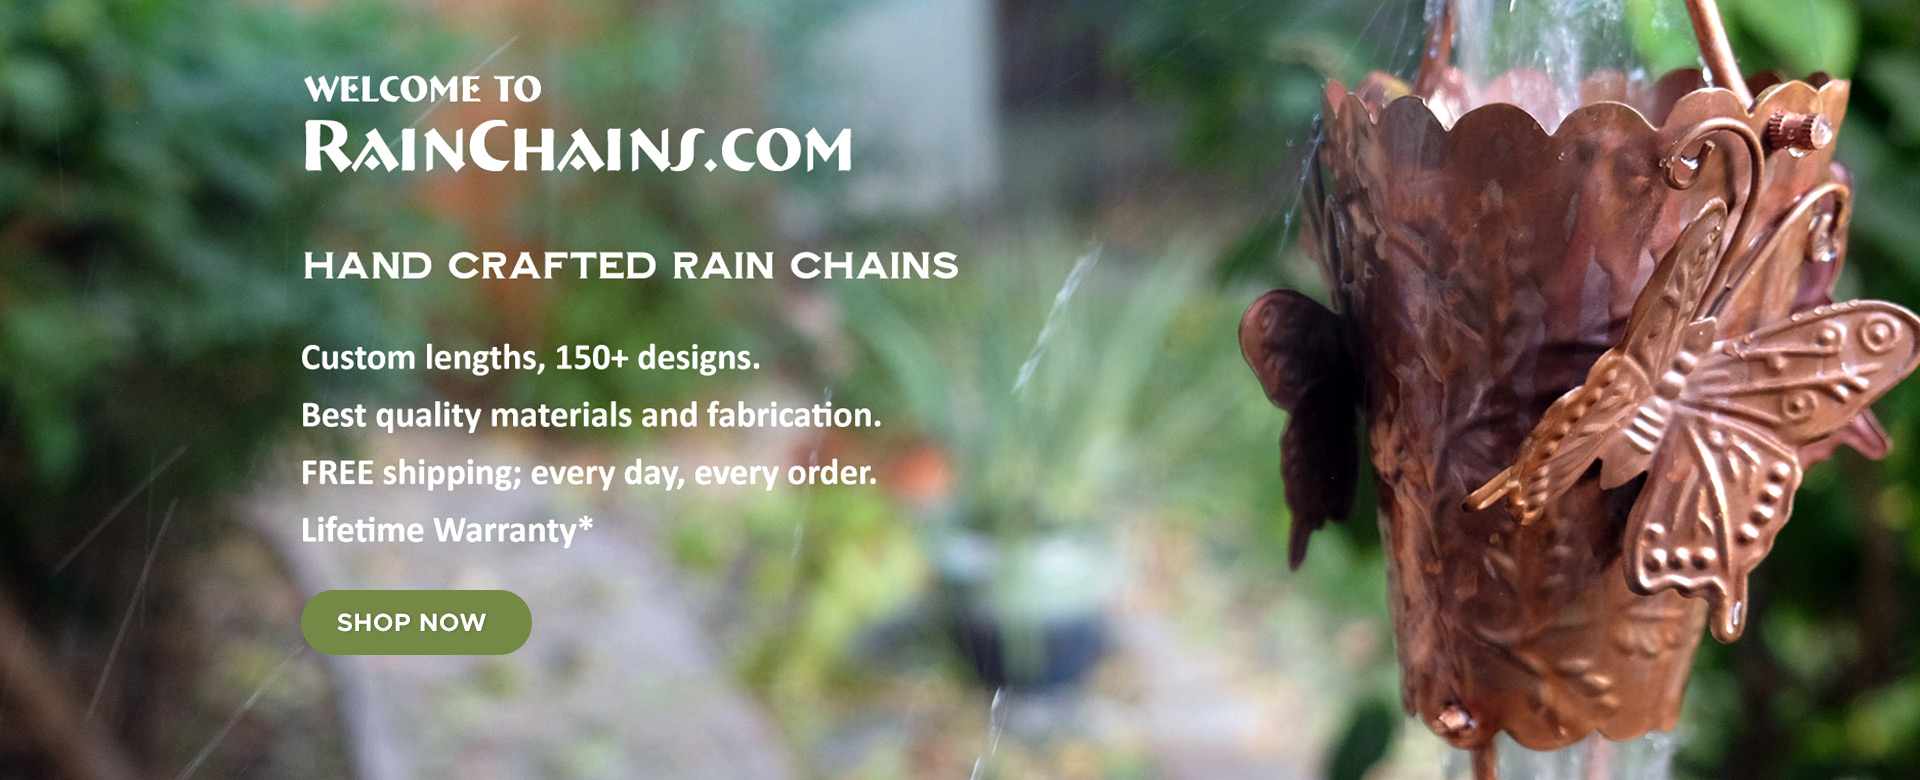 Rain Chains